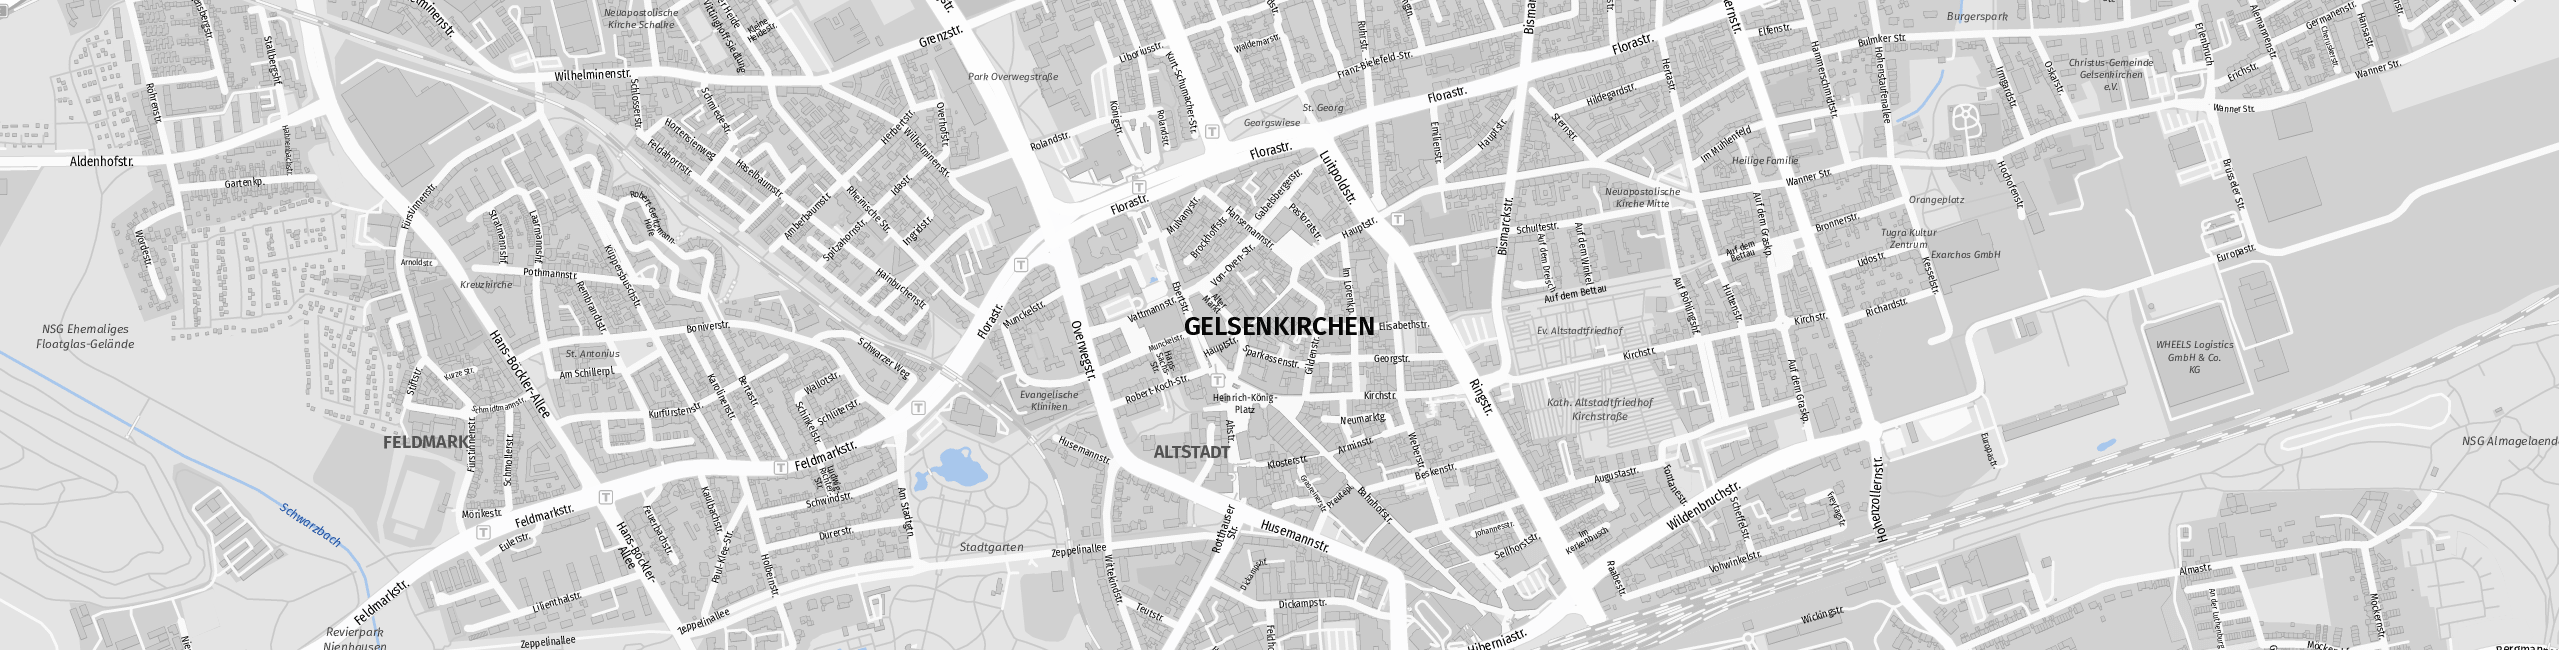 Stadtplan Gelsenkirchen zum Downloaden.